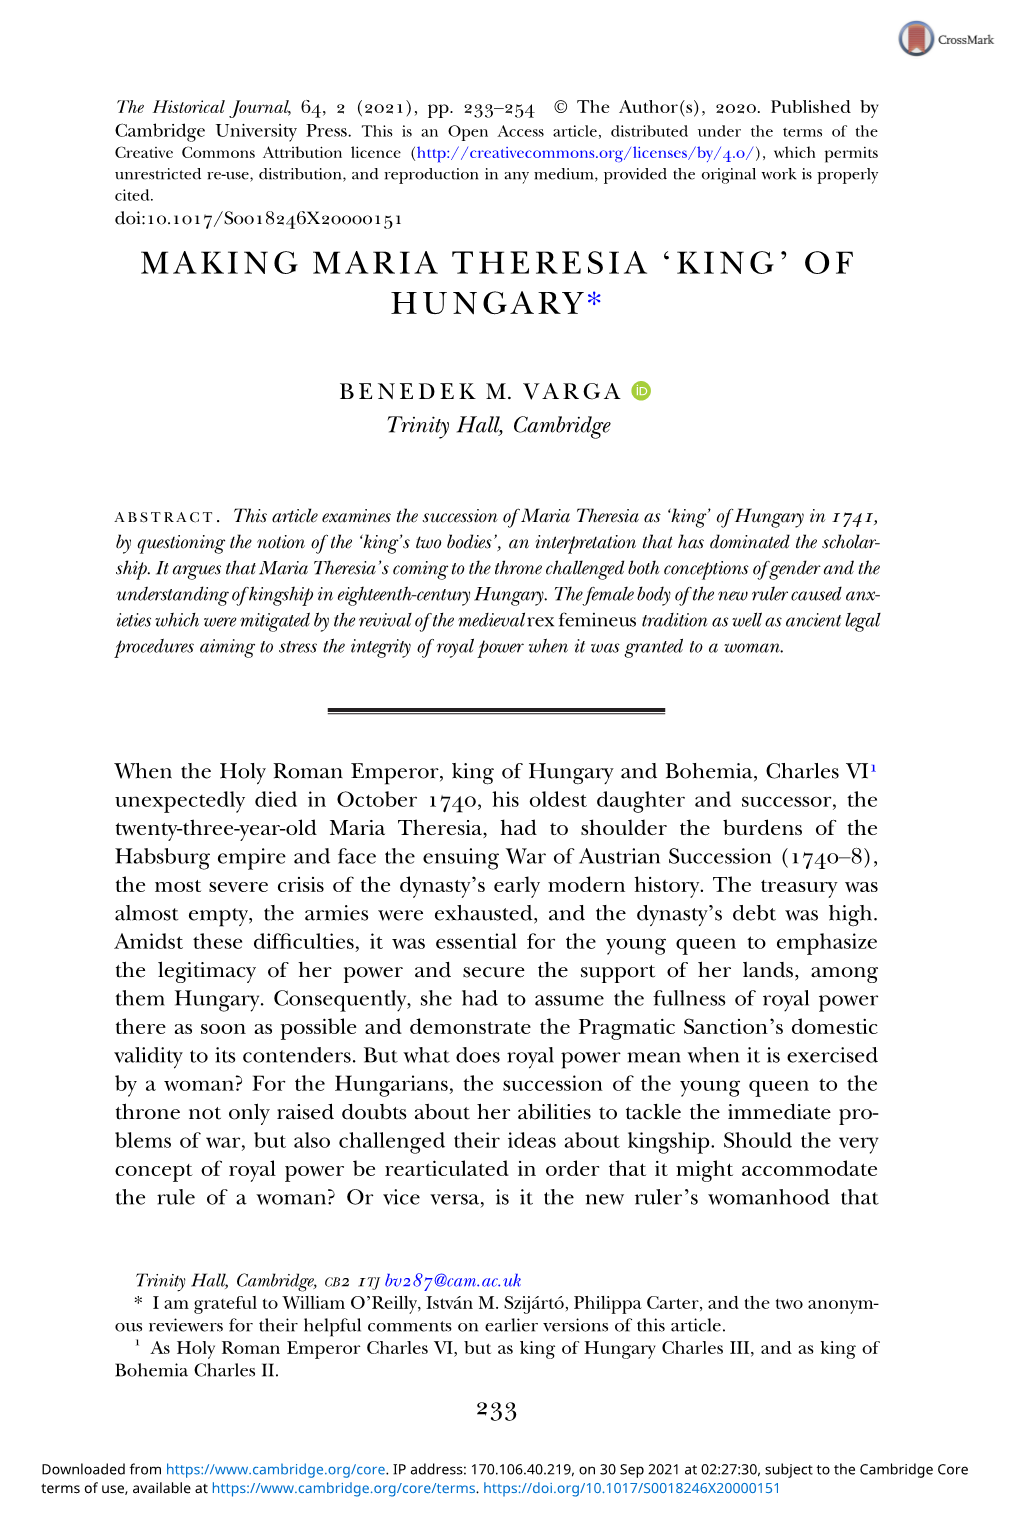 Making Maria Theresia 'King' of Hungary*